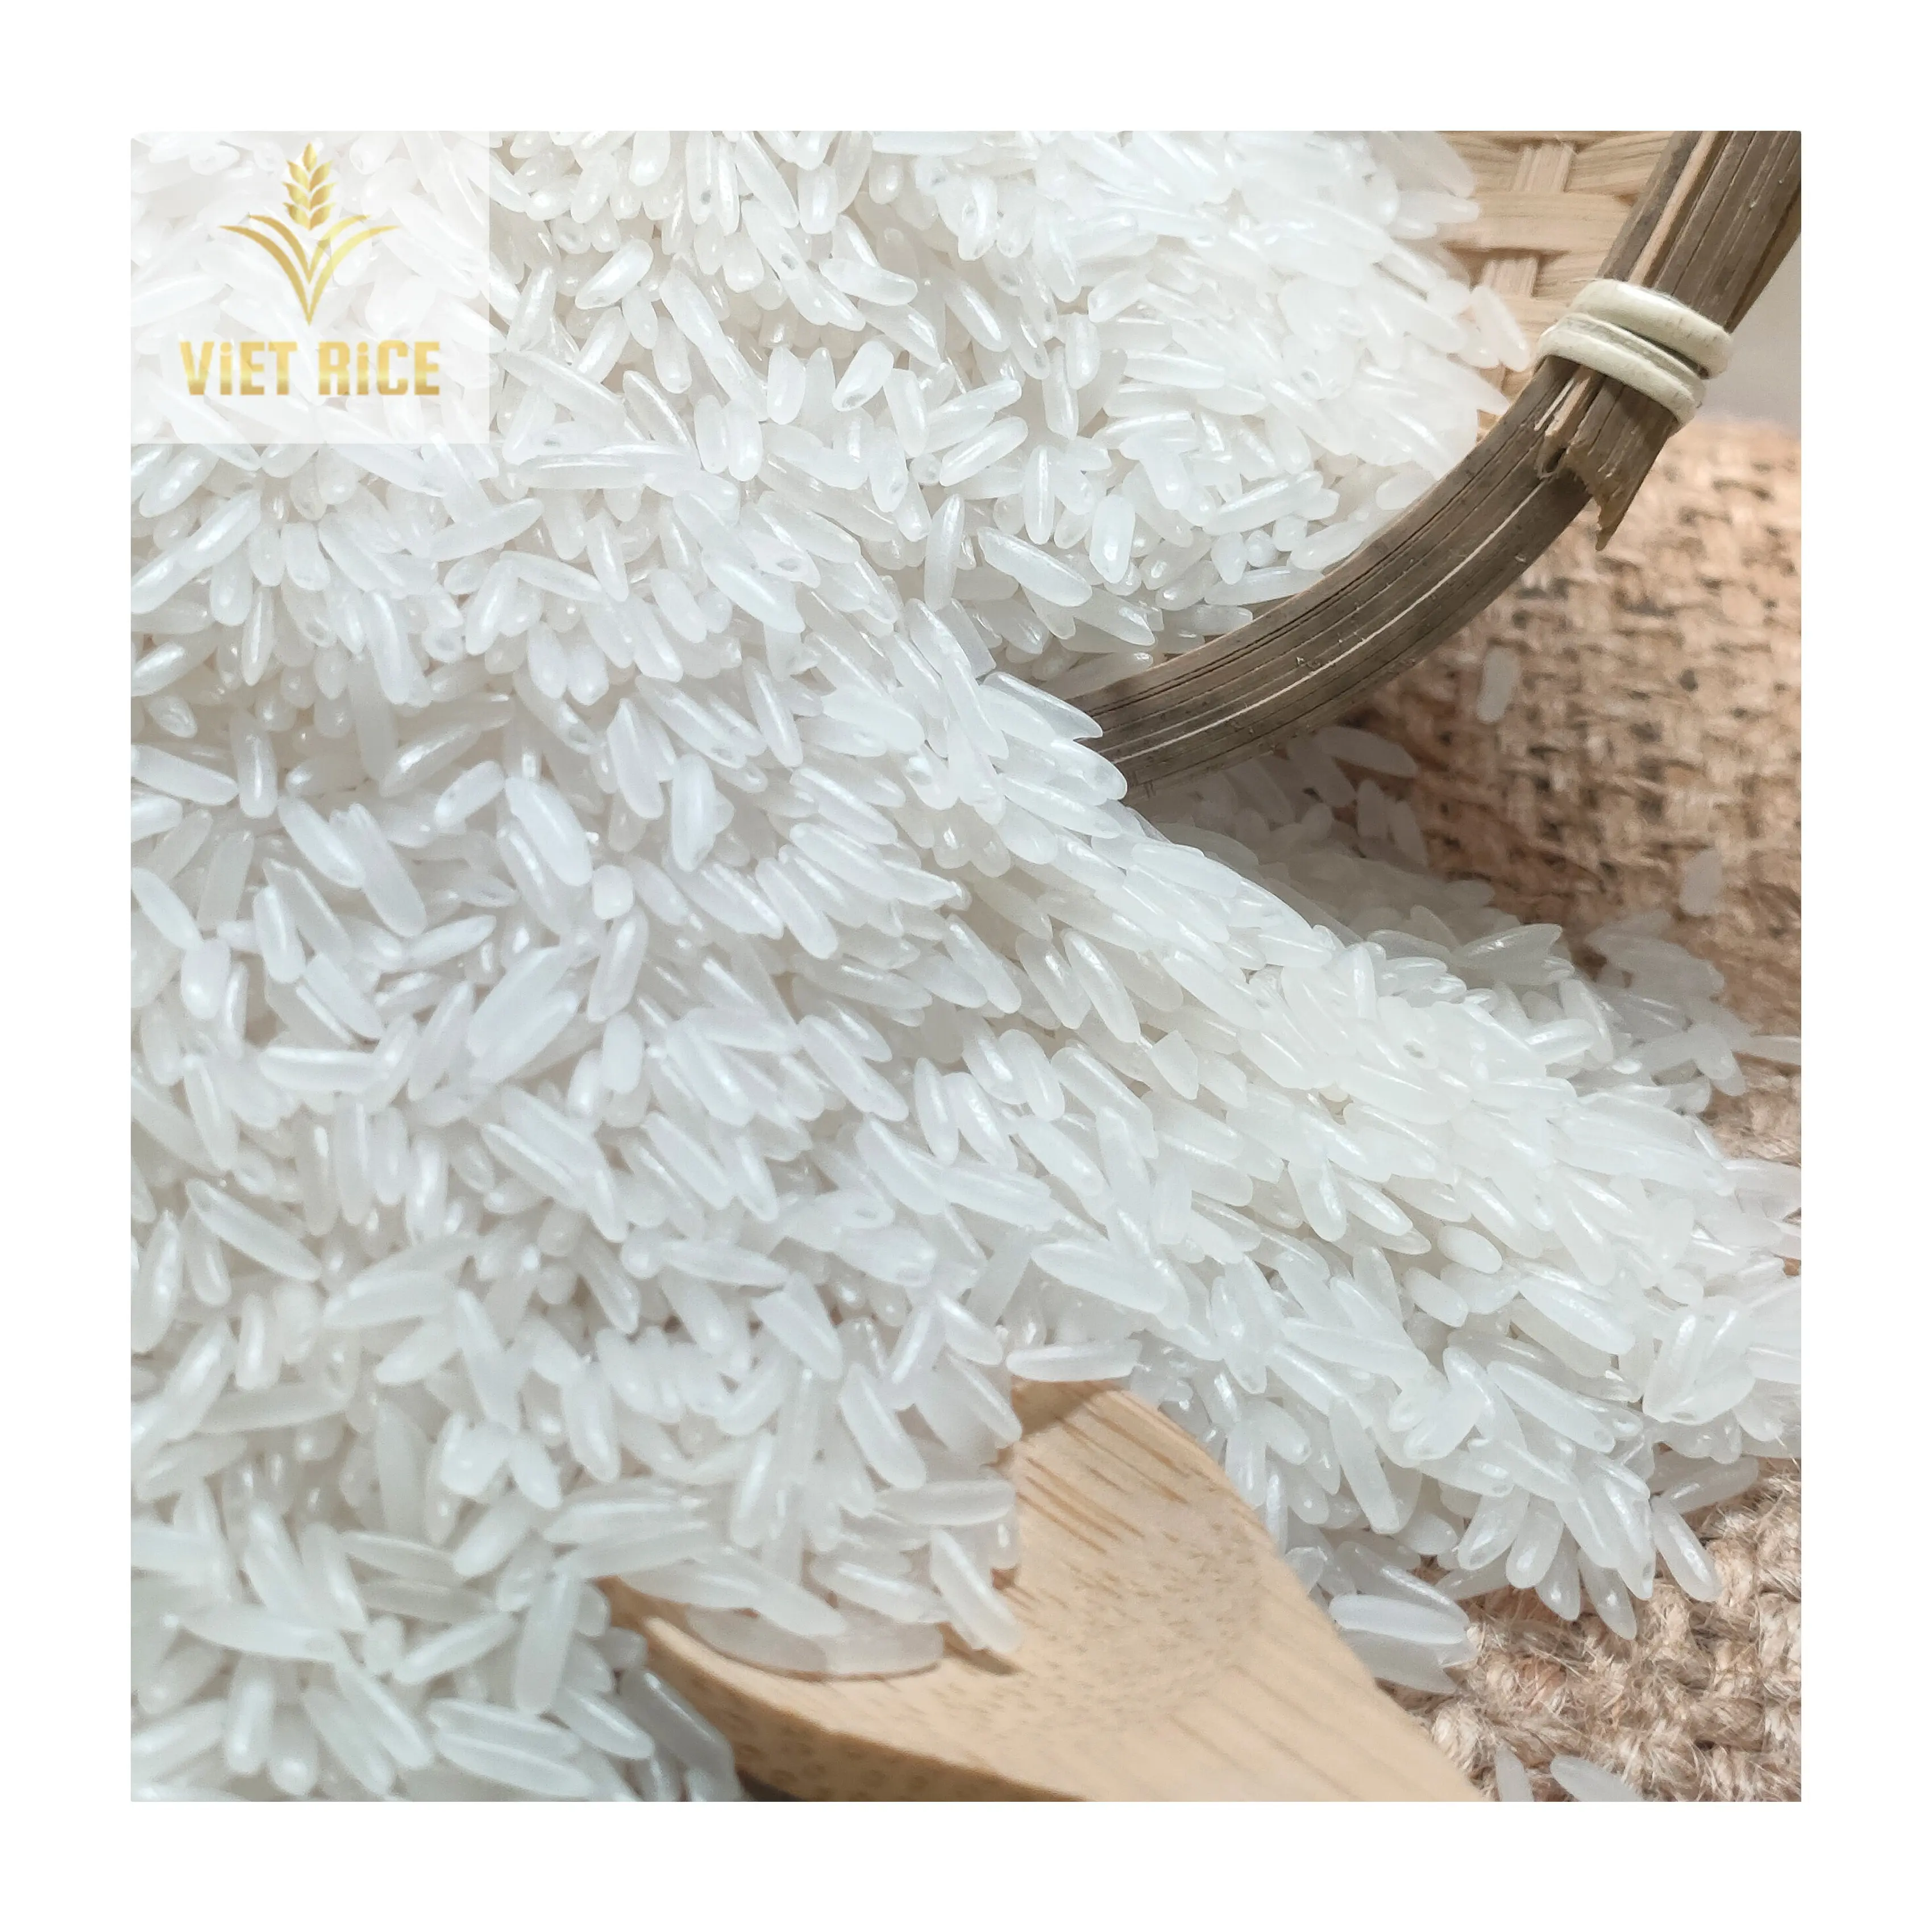 Vietnam pirinç yasemin pirinç ambalaj 1kg 5kg 25kg uzun taneli beyaz pirinç toptan Vietnam Whatsapp + 84769340108